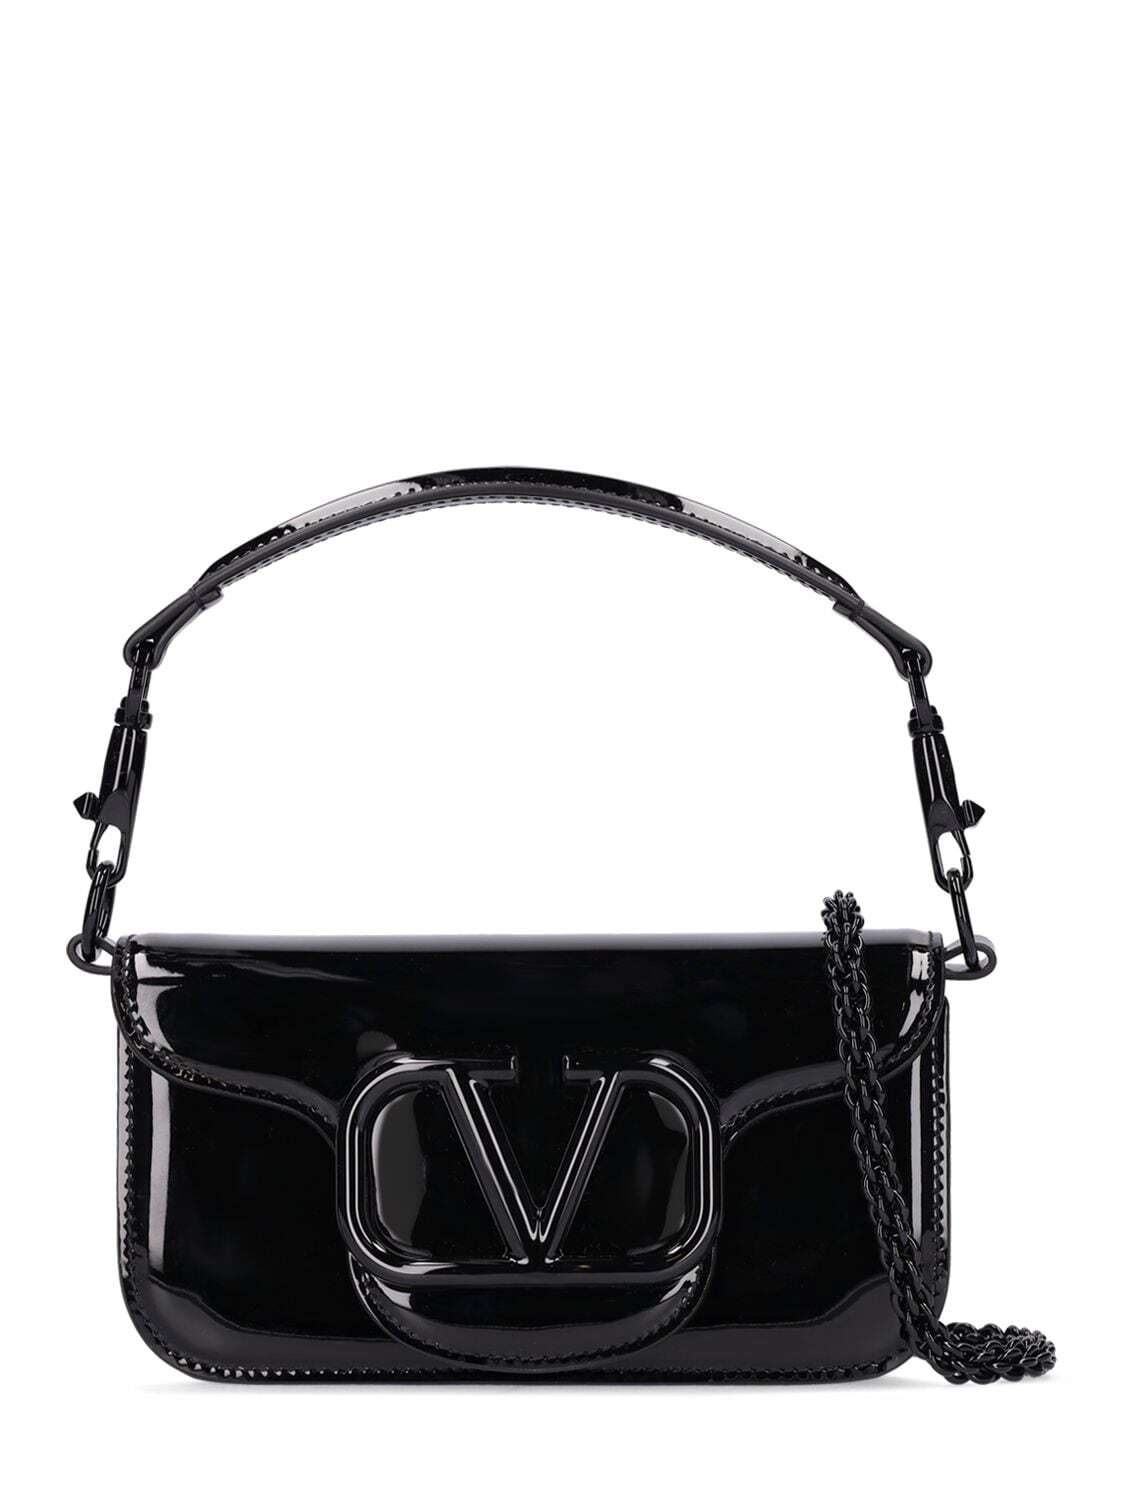 VALENTINO GARAVANI Small Loco Patent Leather Shoulder Bag in black